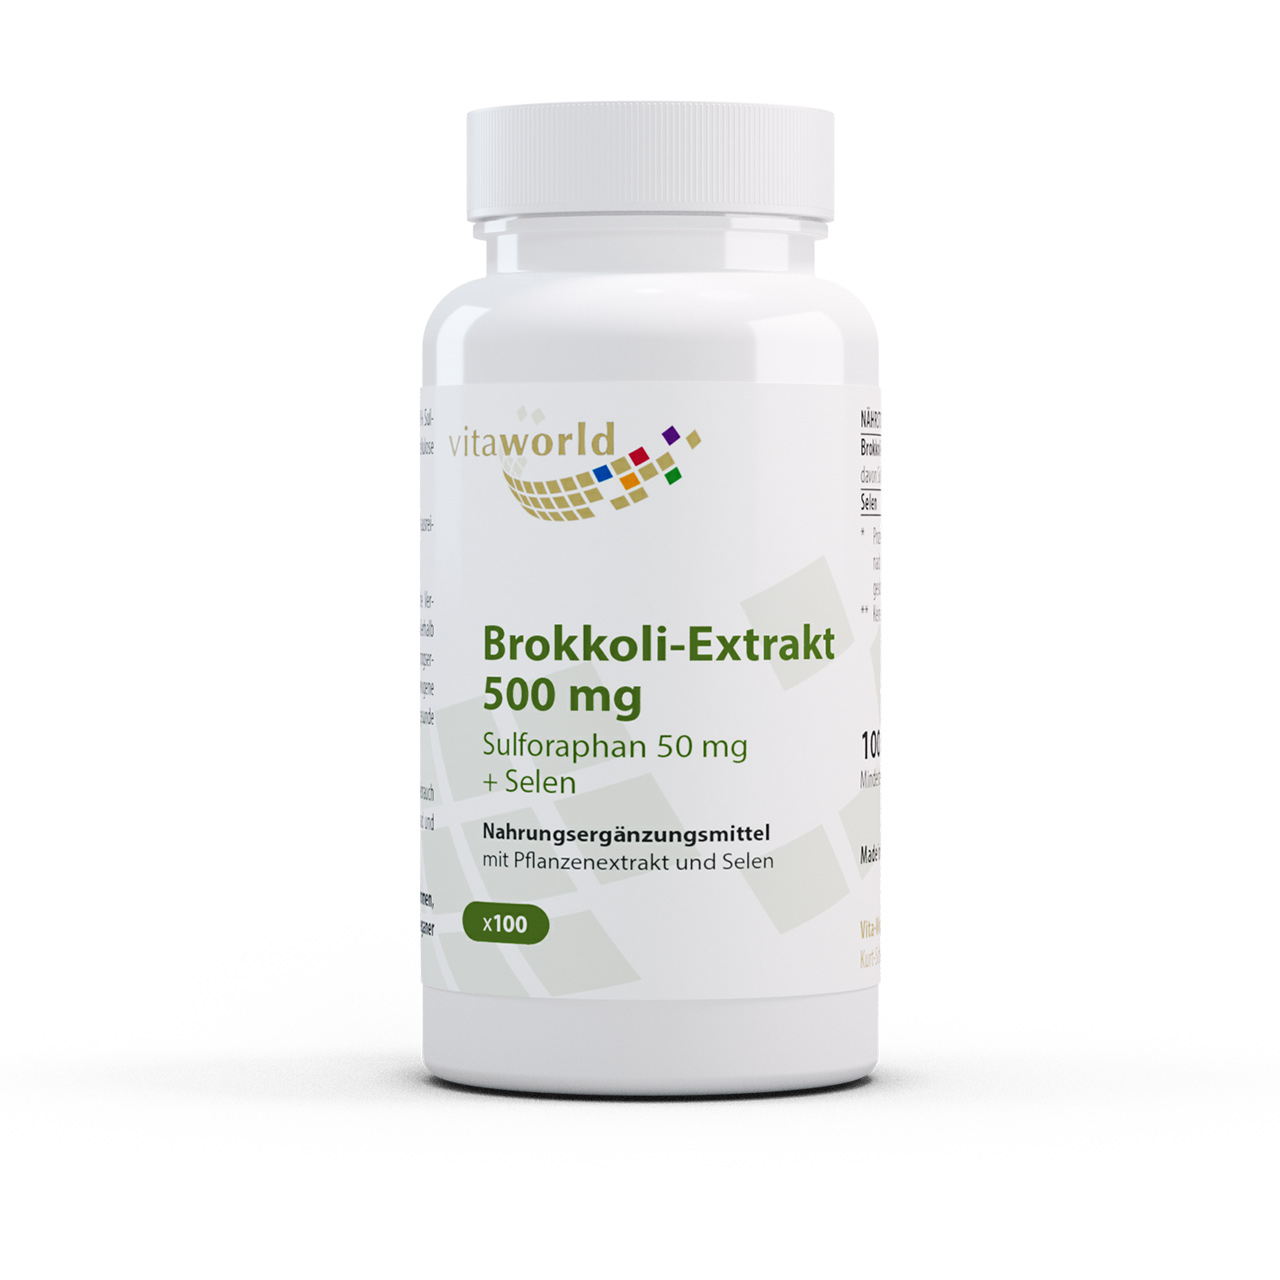 Vitaworld Brokkoli-Extrakt 500 mg | 100 Kapseln | mit Sulforaphan und Selen | vegan | gluten- und laktosefrei